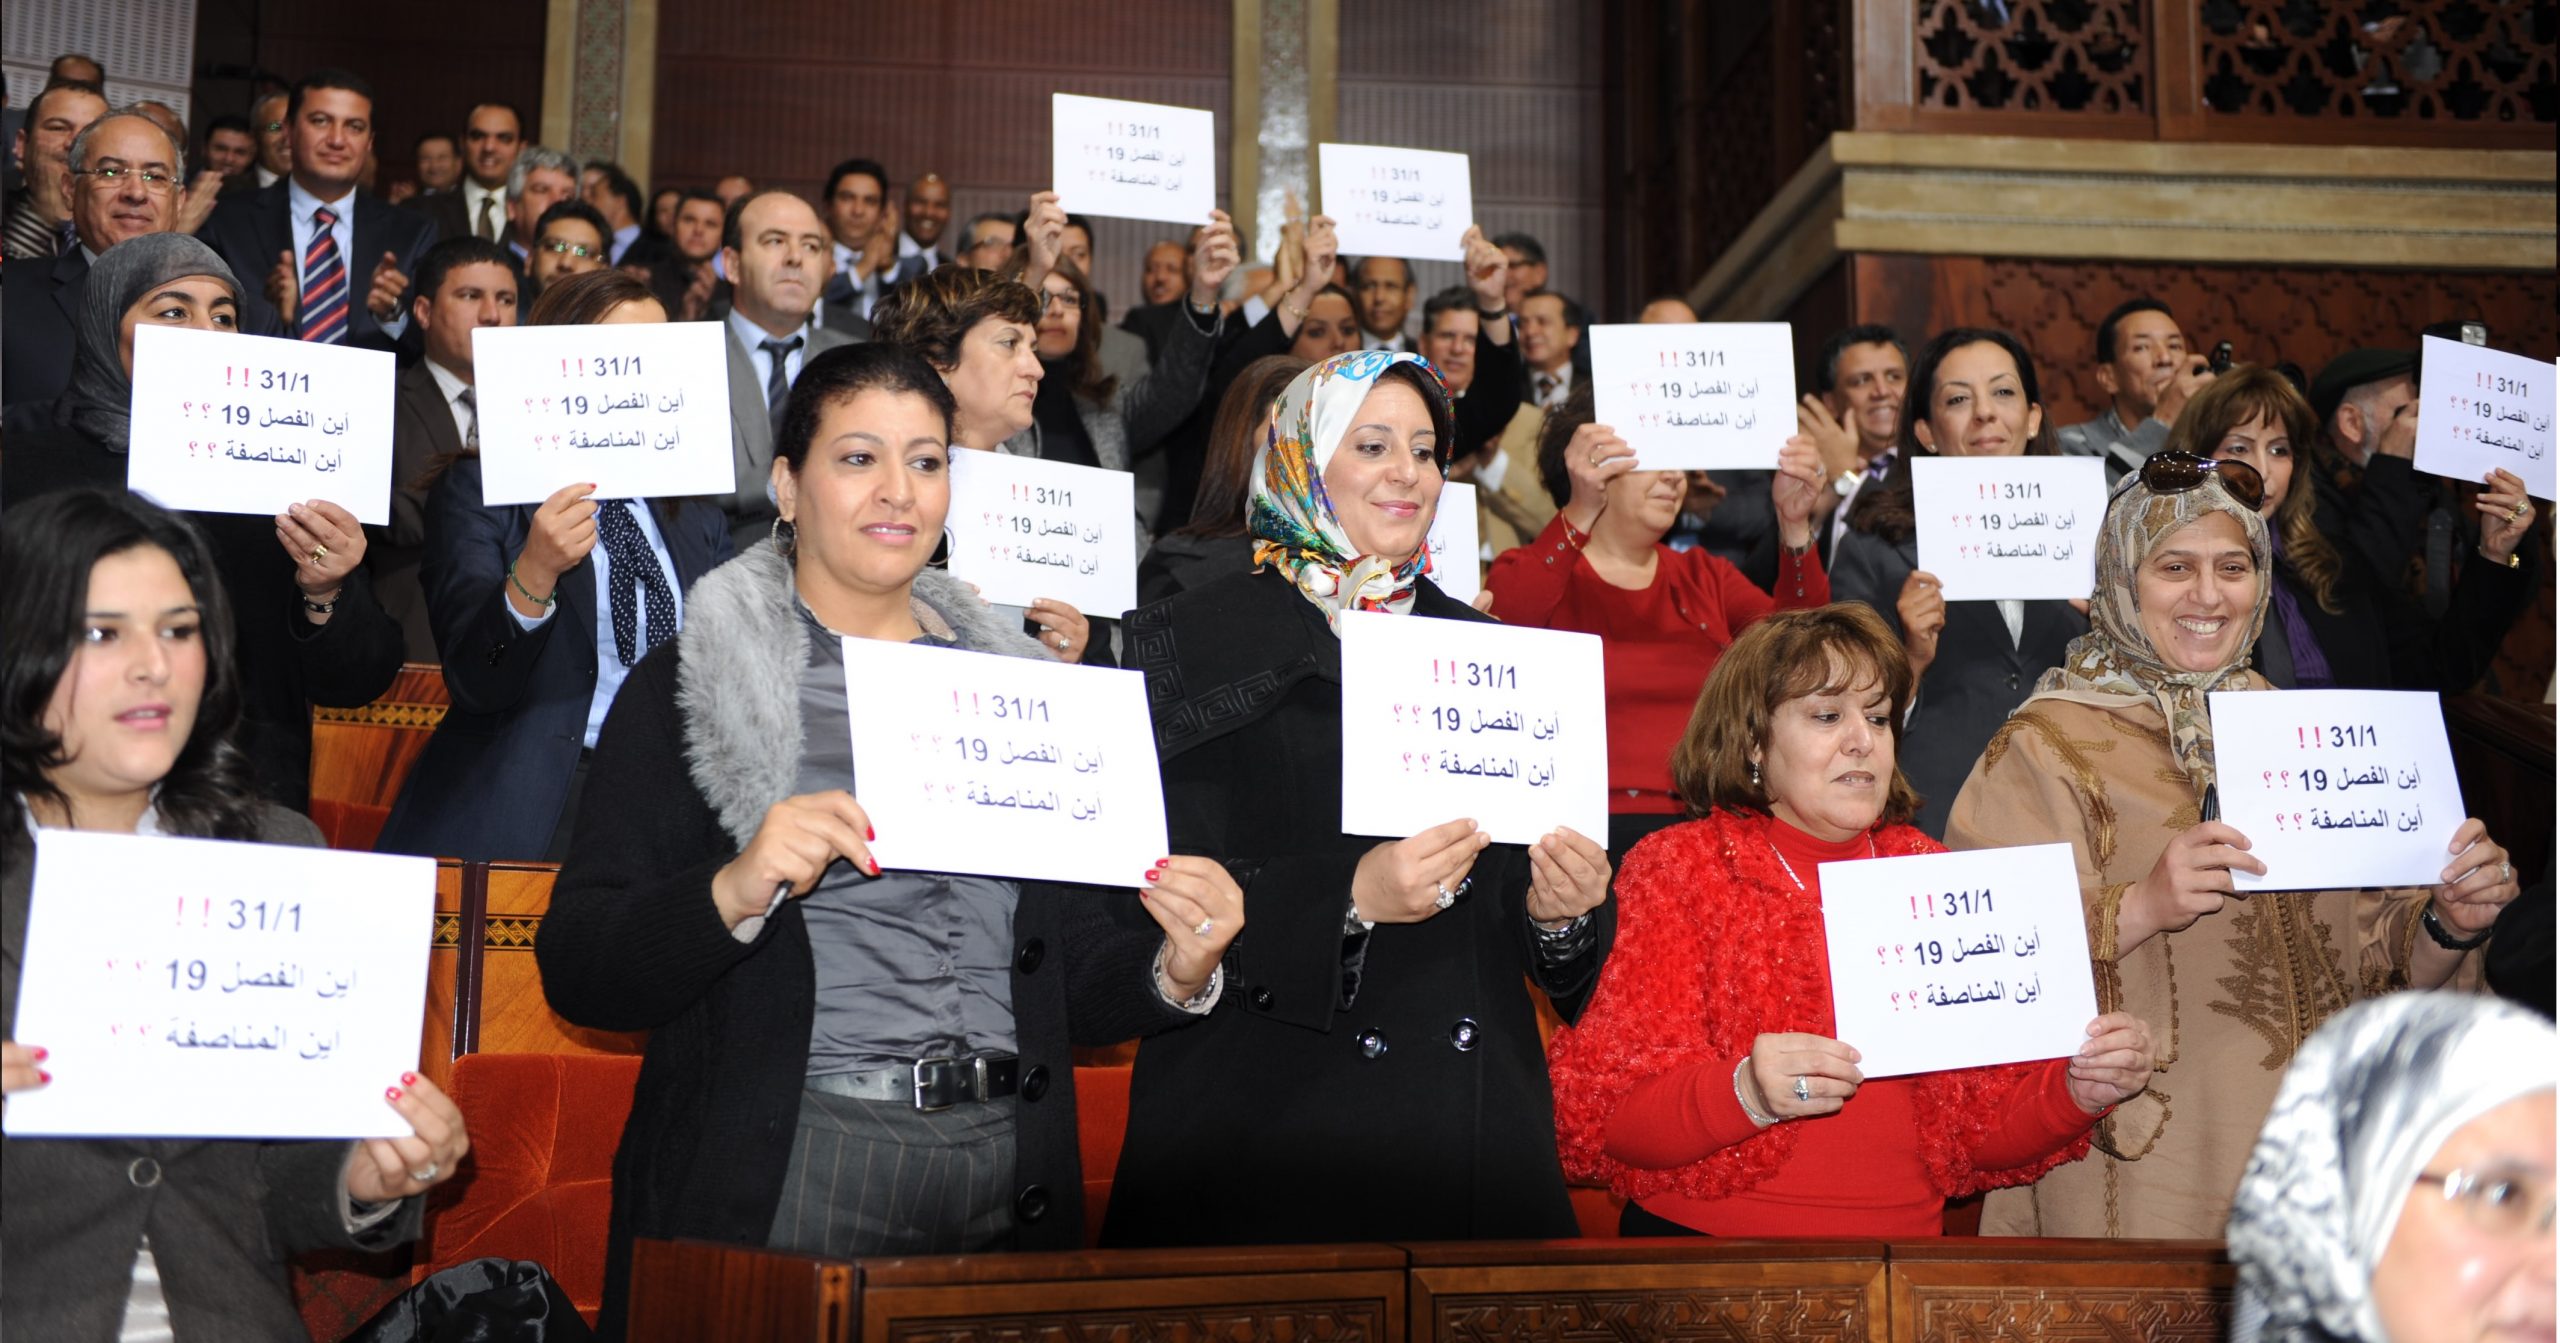 الداخلية تدعم مشروع “بسمة” لتشجيع المشاركة السياسية للنساء